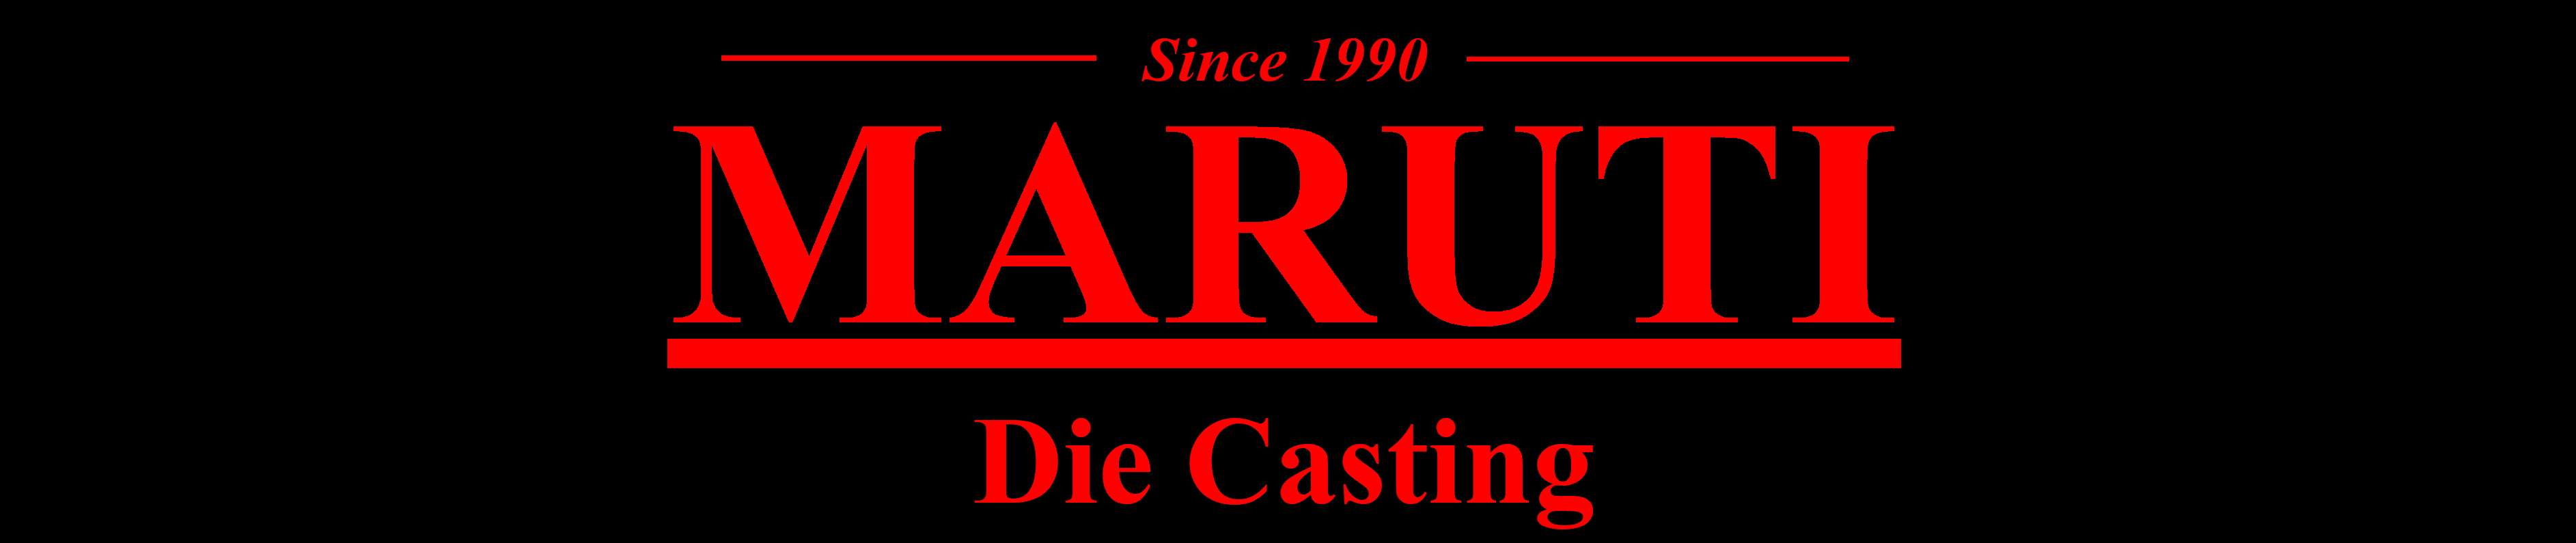 Maruti Die Casting